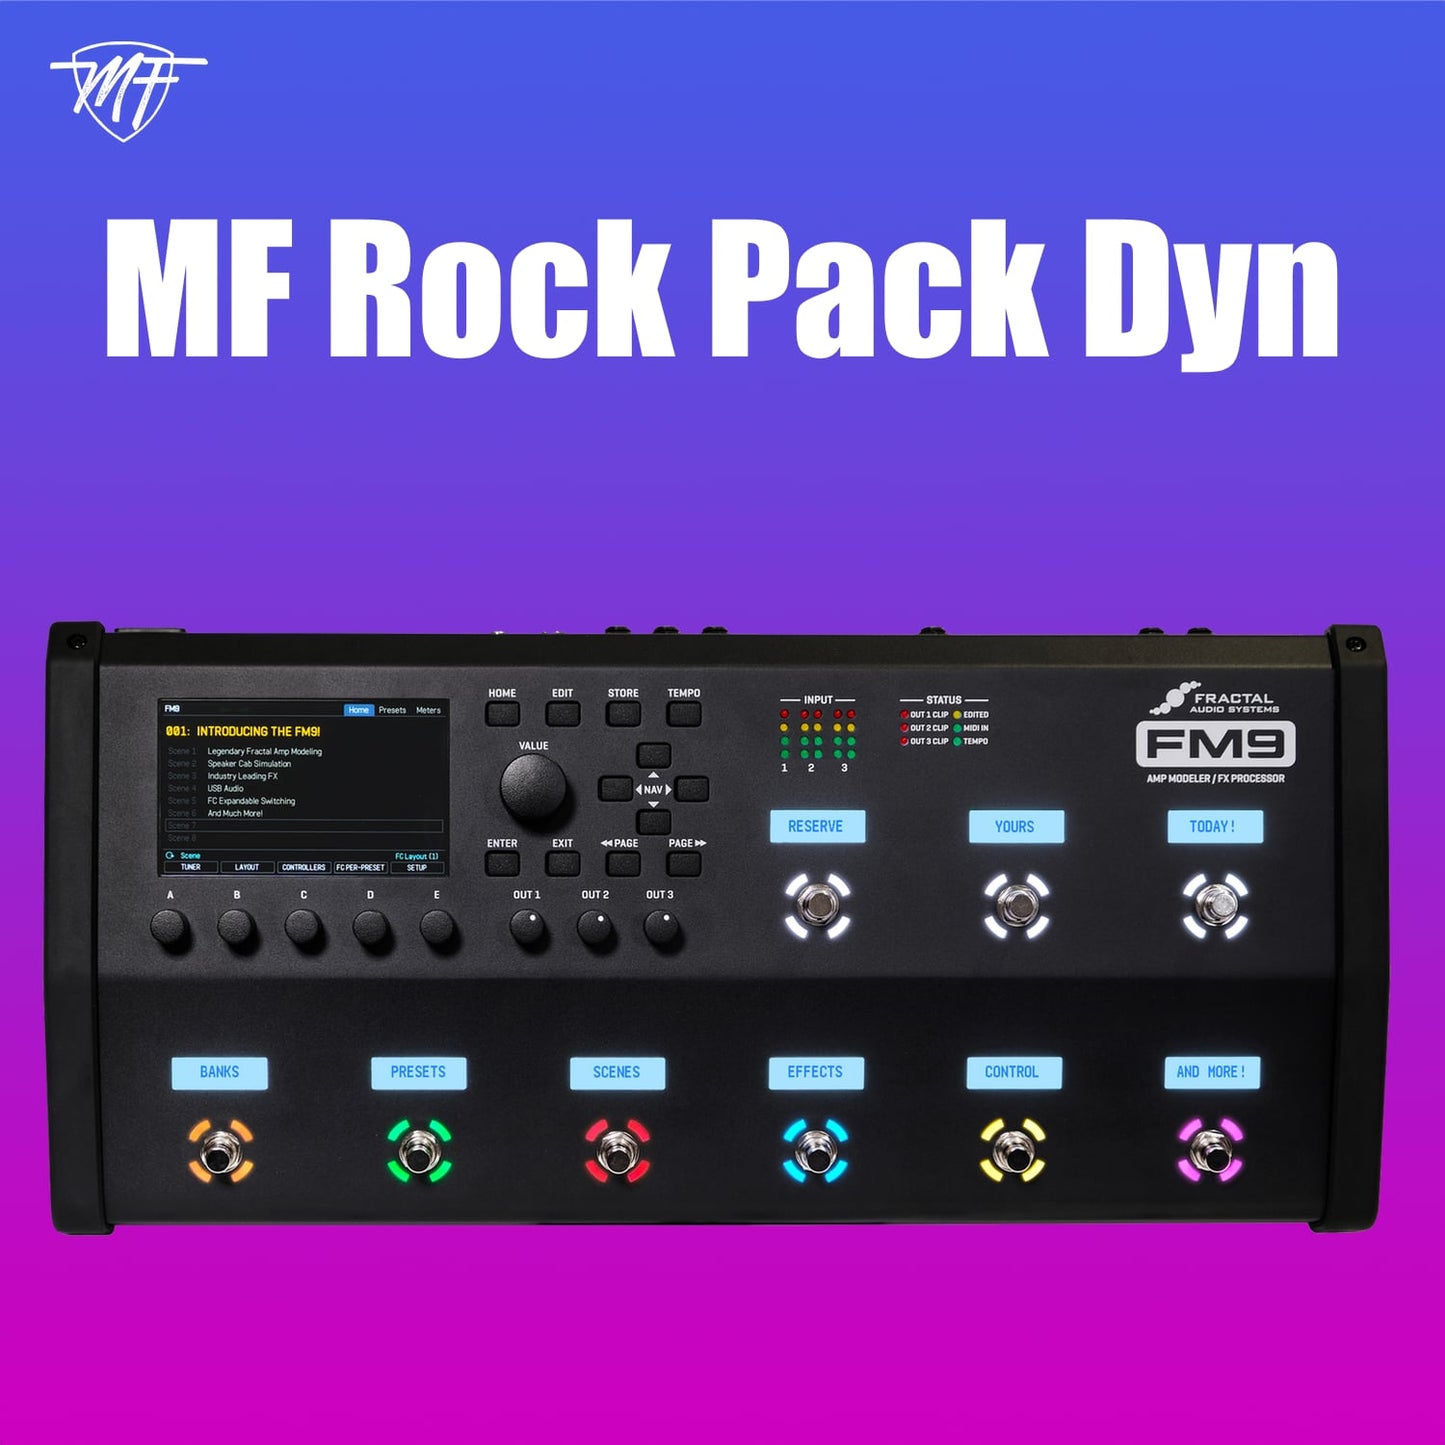 MF Rock Pack Dyn FM9